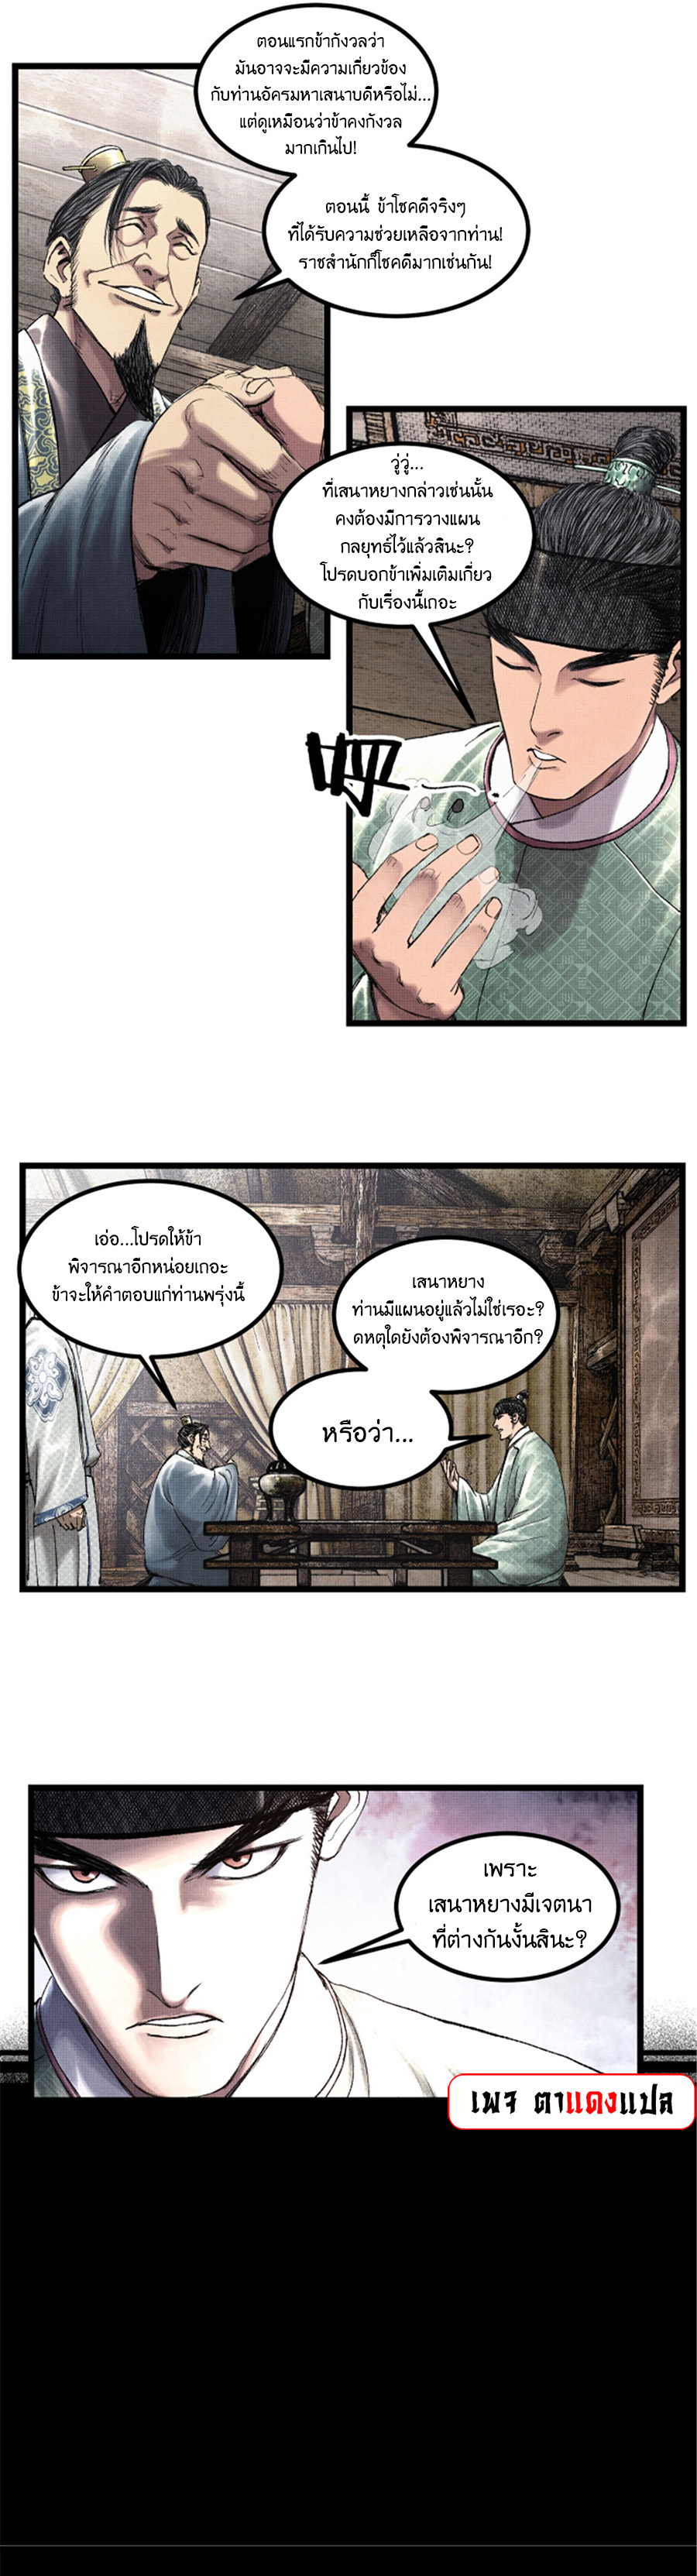 Lu Bu’s life story 63 (8)